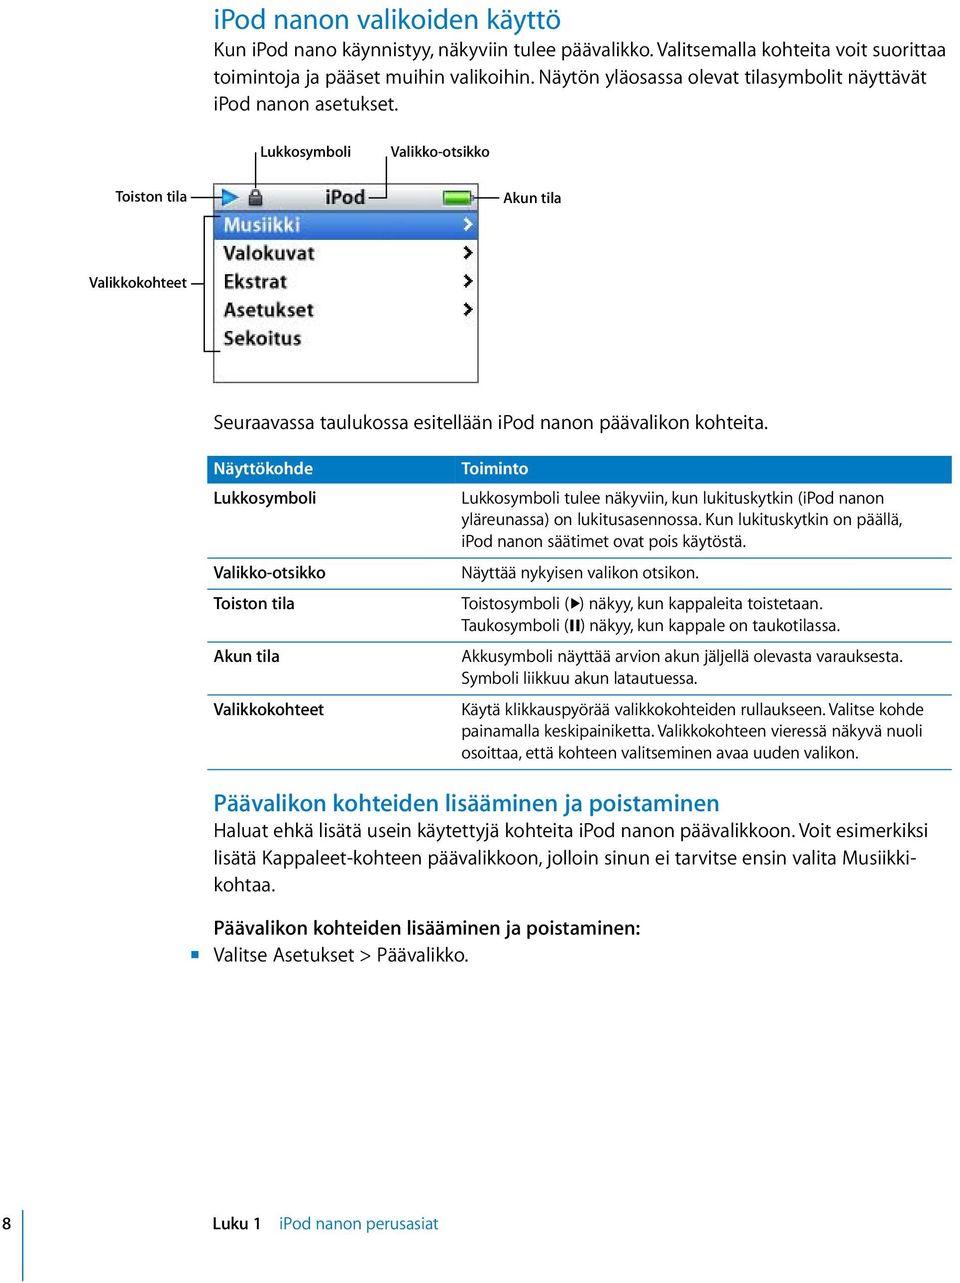 Lukkosymboli Valikko-otsikko Toiston tila Akun tila Valikkokohteet Seuraavassa taulukossa esitellään ipod nanon päävalikon kohteita.